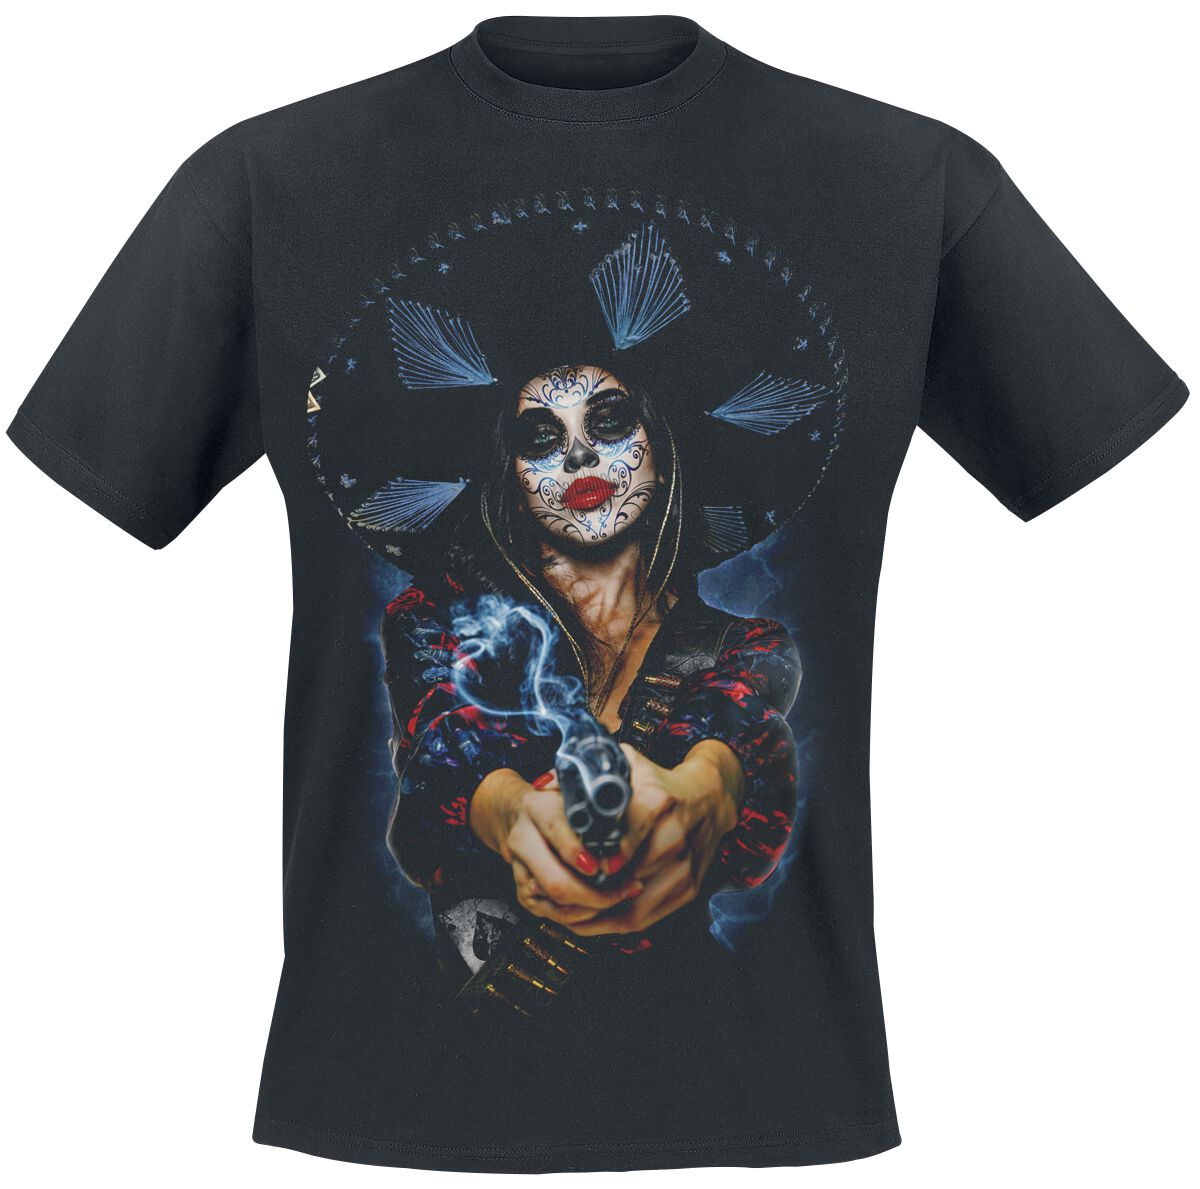 The Offspring T-Shirt - Bad Times - S bis XXL - für Männer - Größe S - schwarz  - Lizenziertes Merchandise!